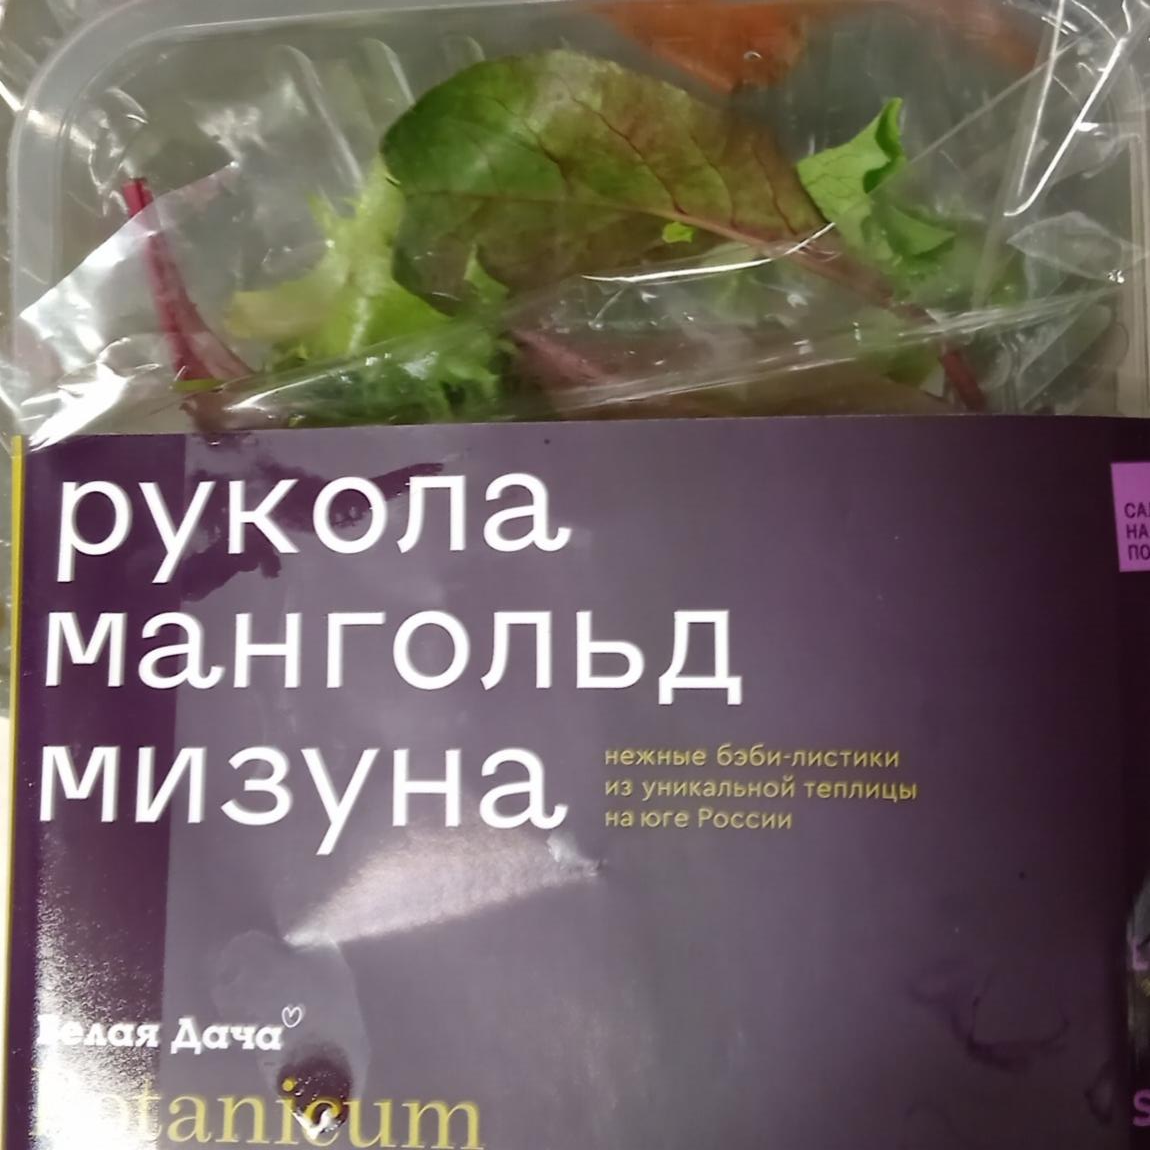 Фото - Овощи салатные свежие рукола, мангольд, мизулина Белая дача